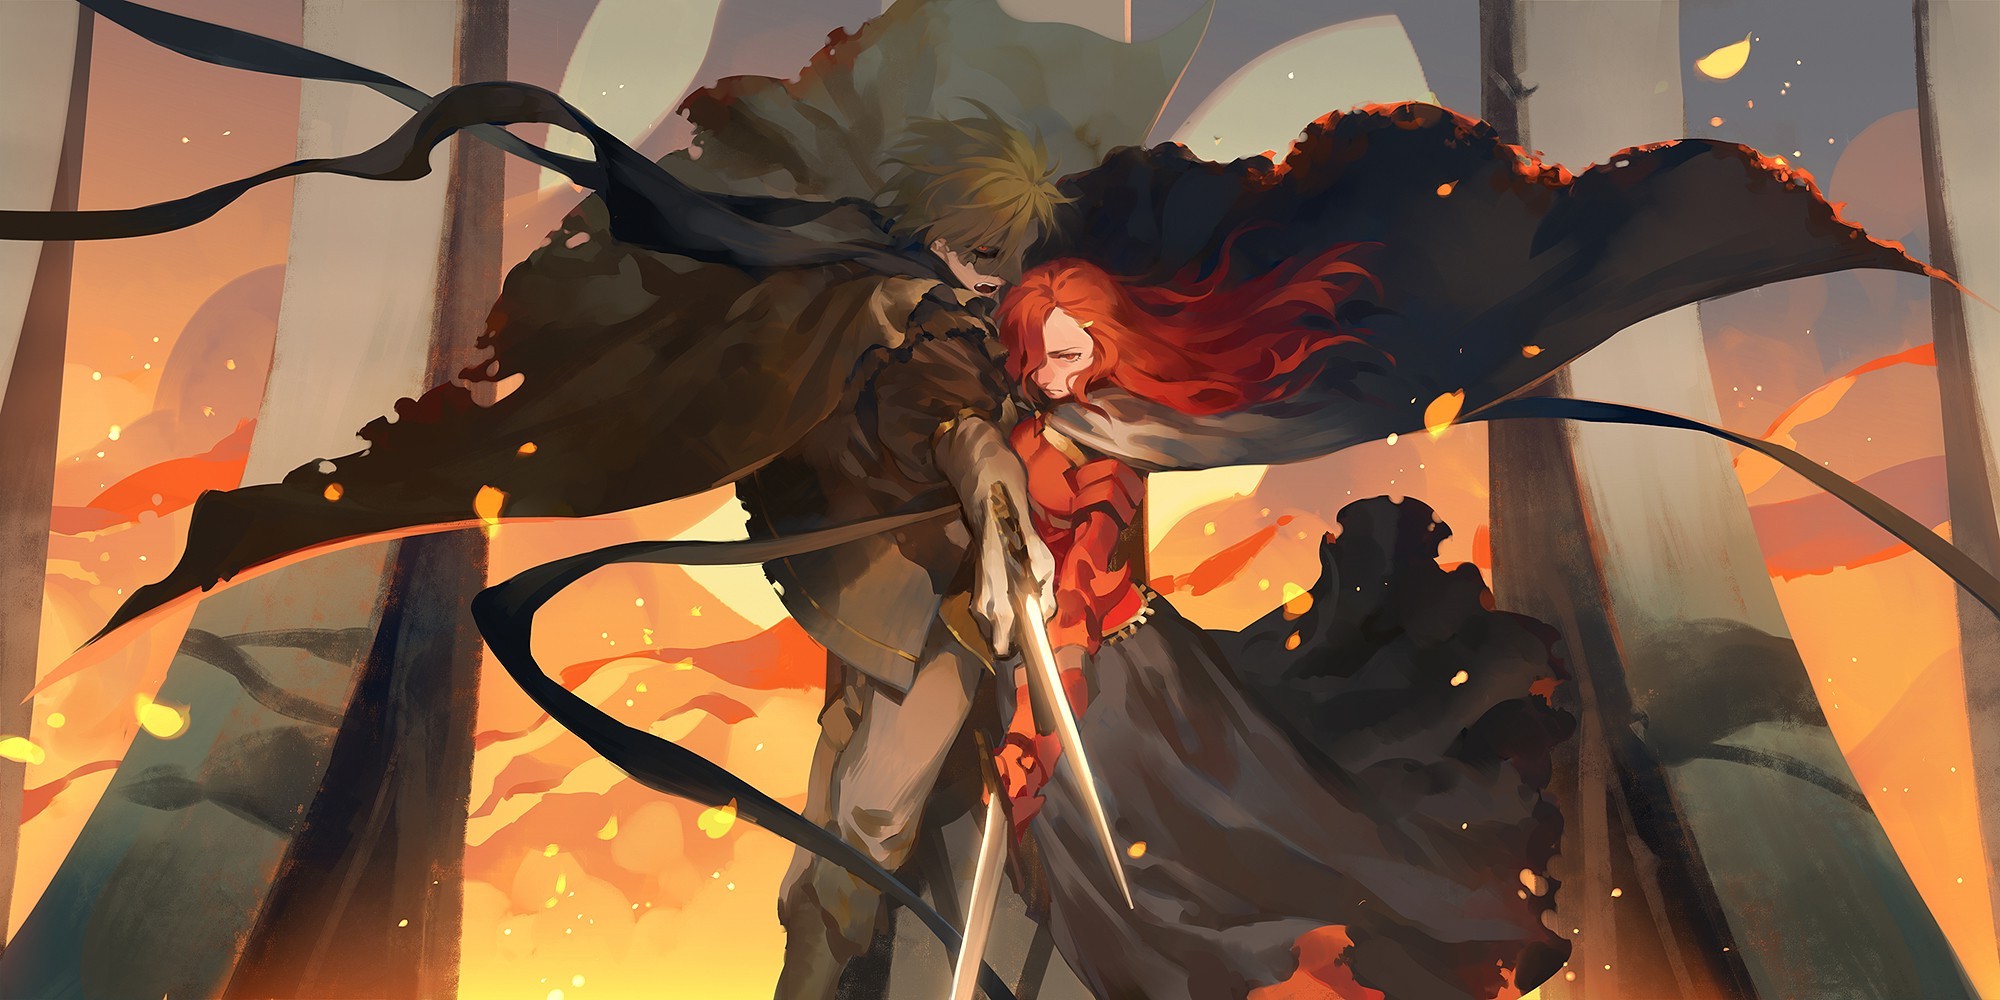 sword, Redhead, Mask, Fantasy Art Wallpaper